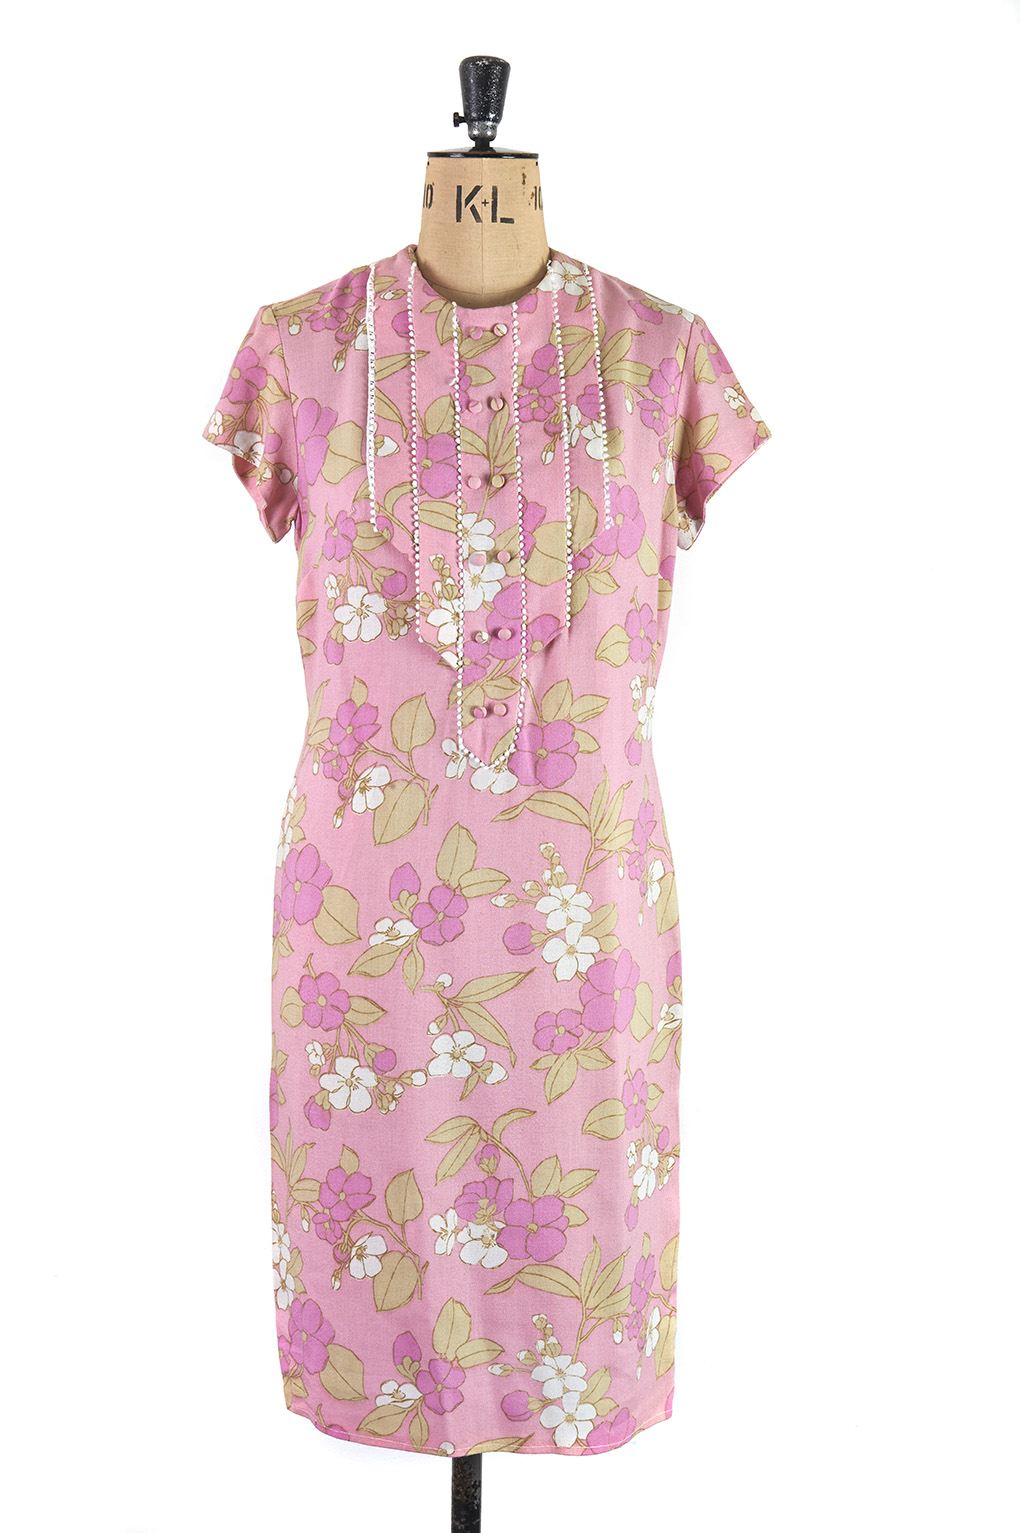 Pink Floral Carnegie of London 1960s vintage shift dress - Size 10